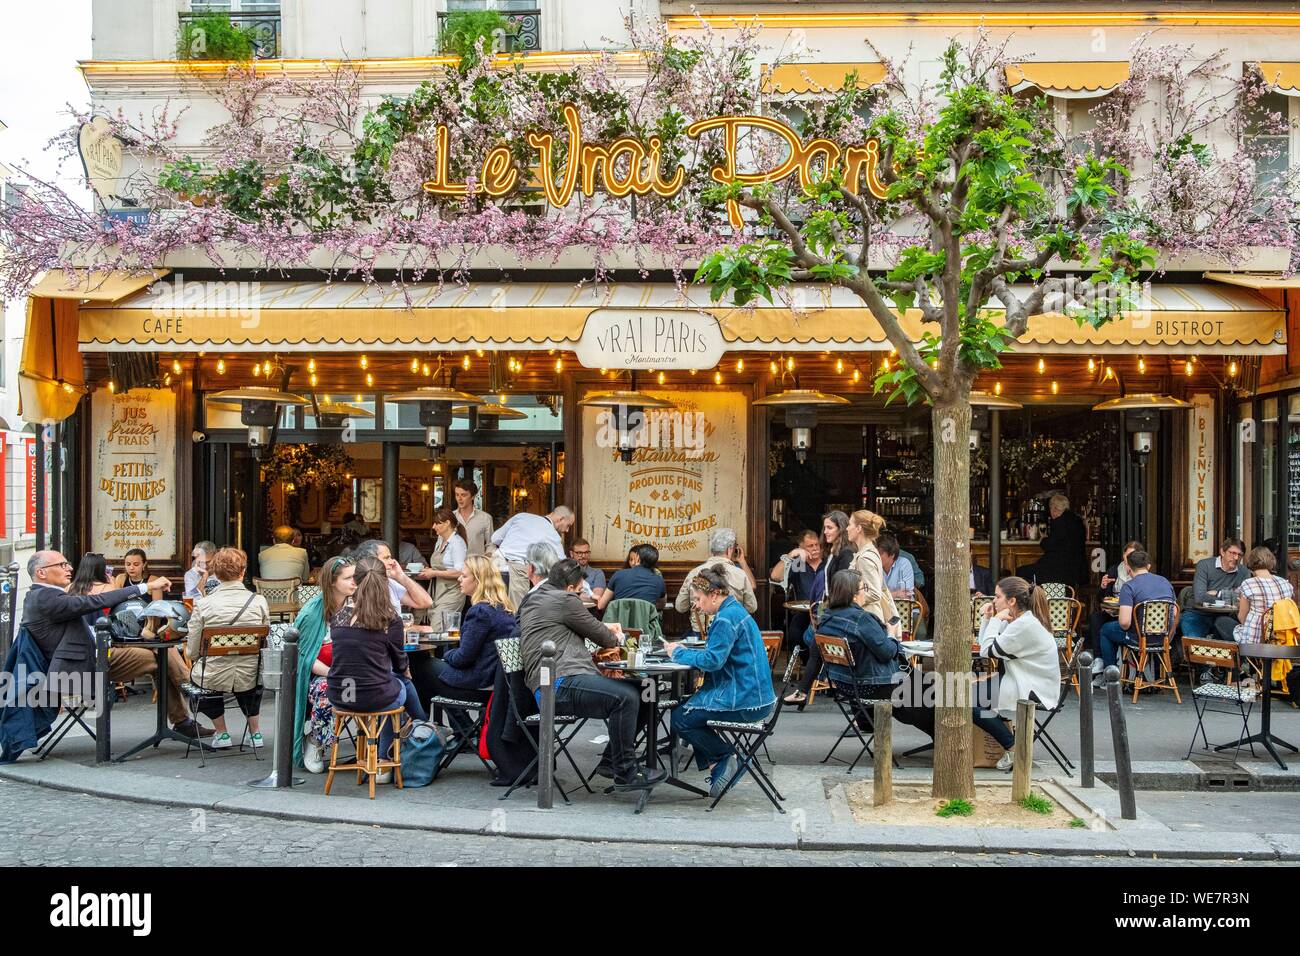 France, Paris, Montmartre district, cafe in the Rue des Abbesses, Le Vrai Paris cafe Stock Photo